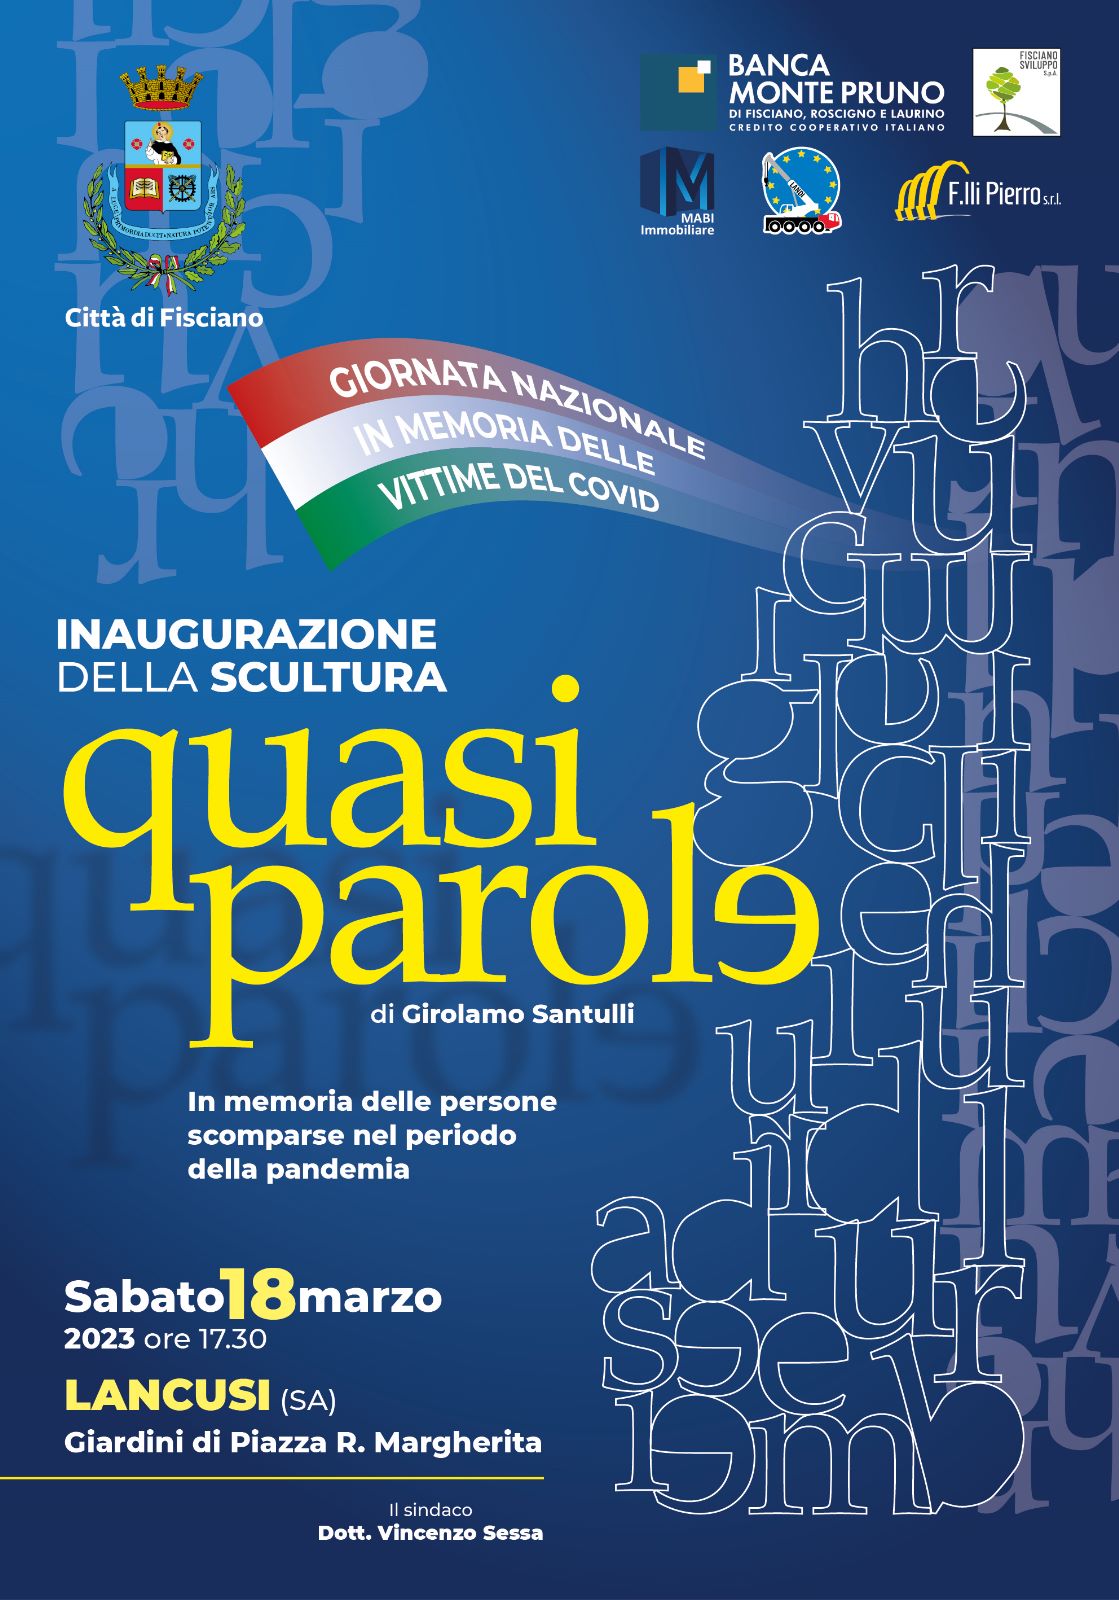 Fisciano: Lancusi, inaugurazione scultura di Girolamo Santulli per vittime Covid